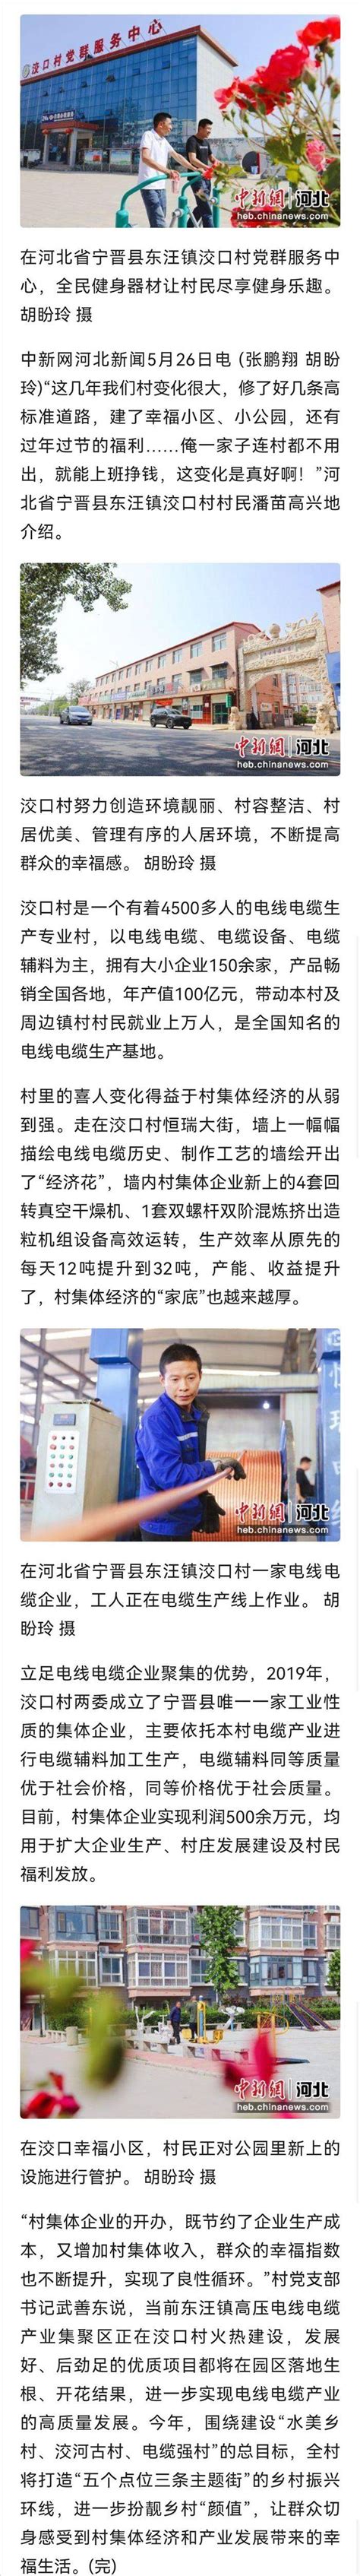 邢台123：宁晋洨口村，拥有大小企业150余家，年产值100亿元